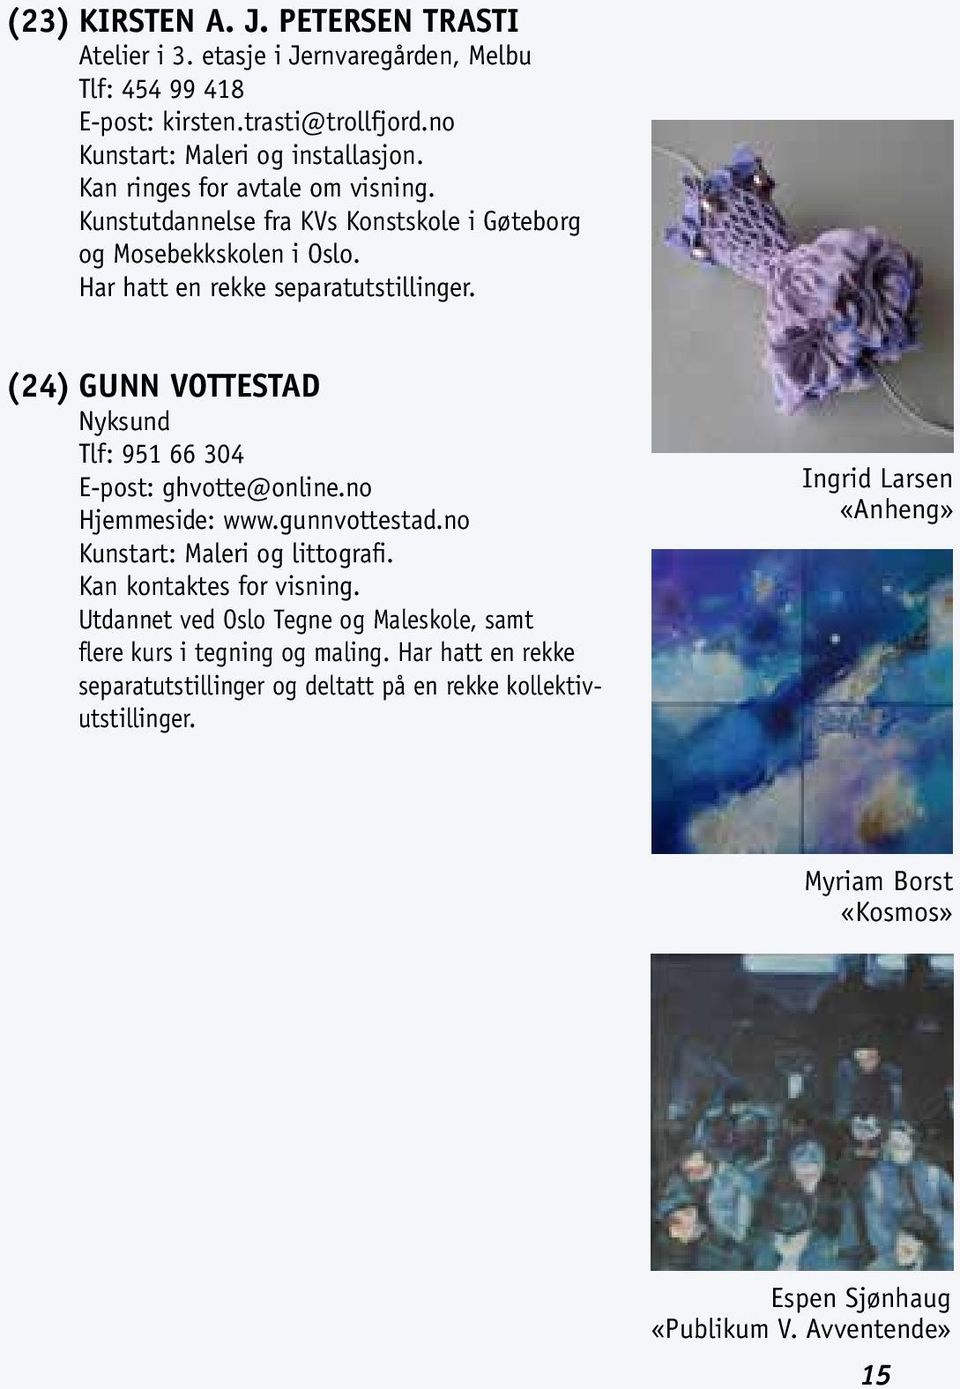 (24) GUNN VOTTESTAD Nyksund Tlf: 951 66 304 E-post: ghvotte@online.no Hjemmeside: www.gunnvottestad.no Kunstart: Maleri og littografi. Kan kontaktes for visning.